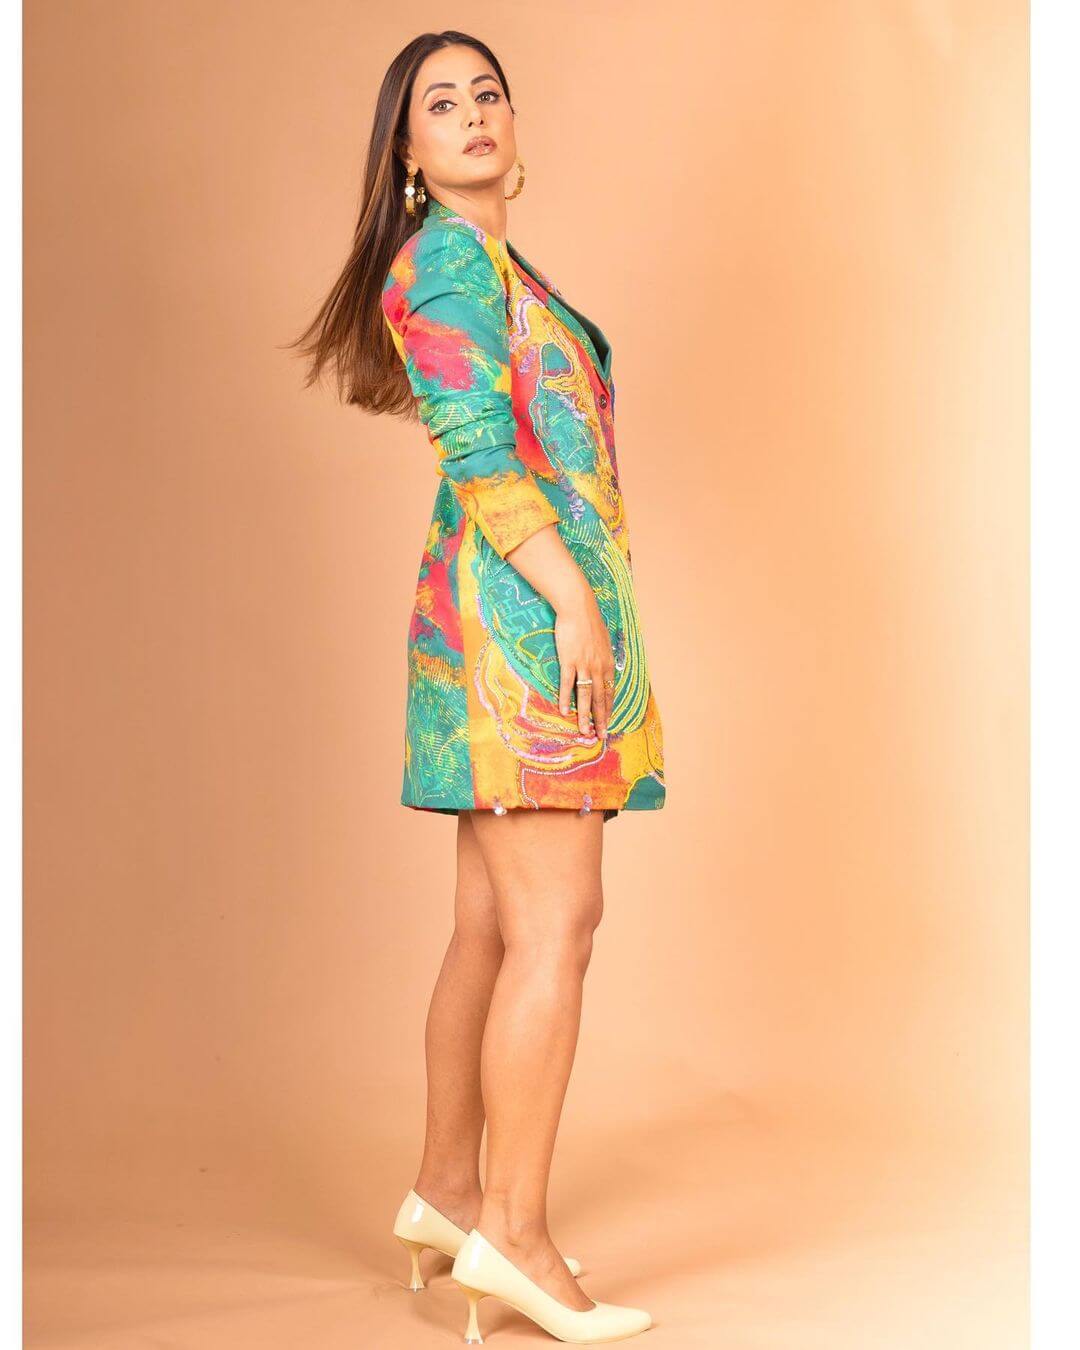 मल्टीकलर सूट ड्रेस द्वारा Hina Khan ने किया यूजर्स को मदहोश, देखें ग्लैमरस लुक 26255